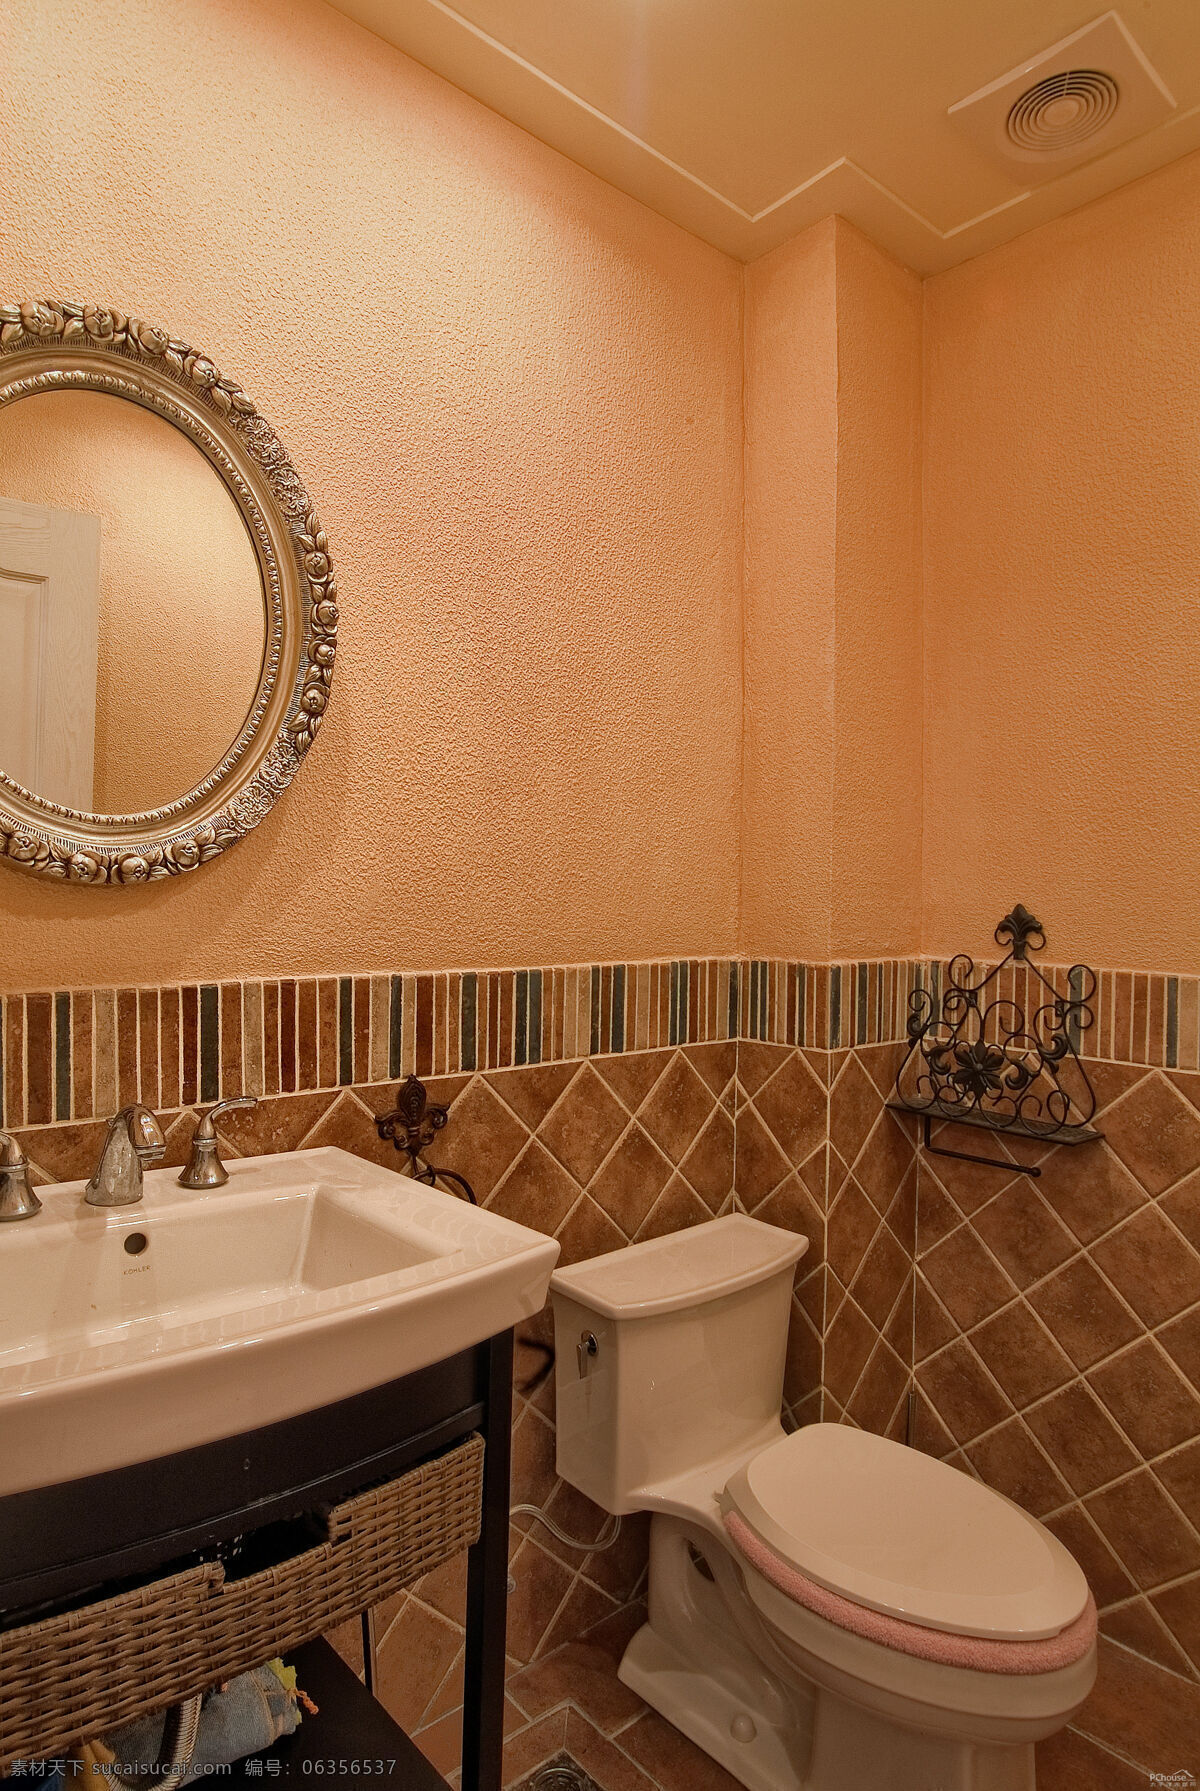 卫生间 厕所 浴室 瓷砖 卫浴 平面 室内 现代 简约 欧式 风格 装修 生活百科 生活用品